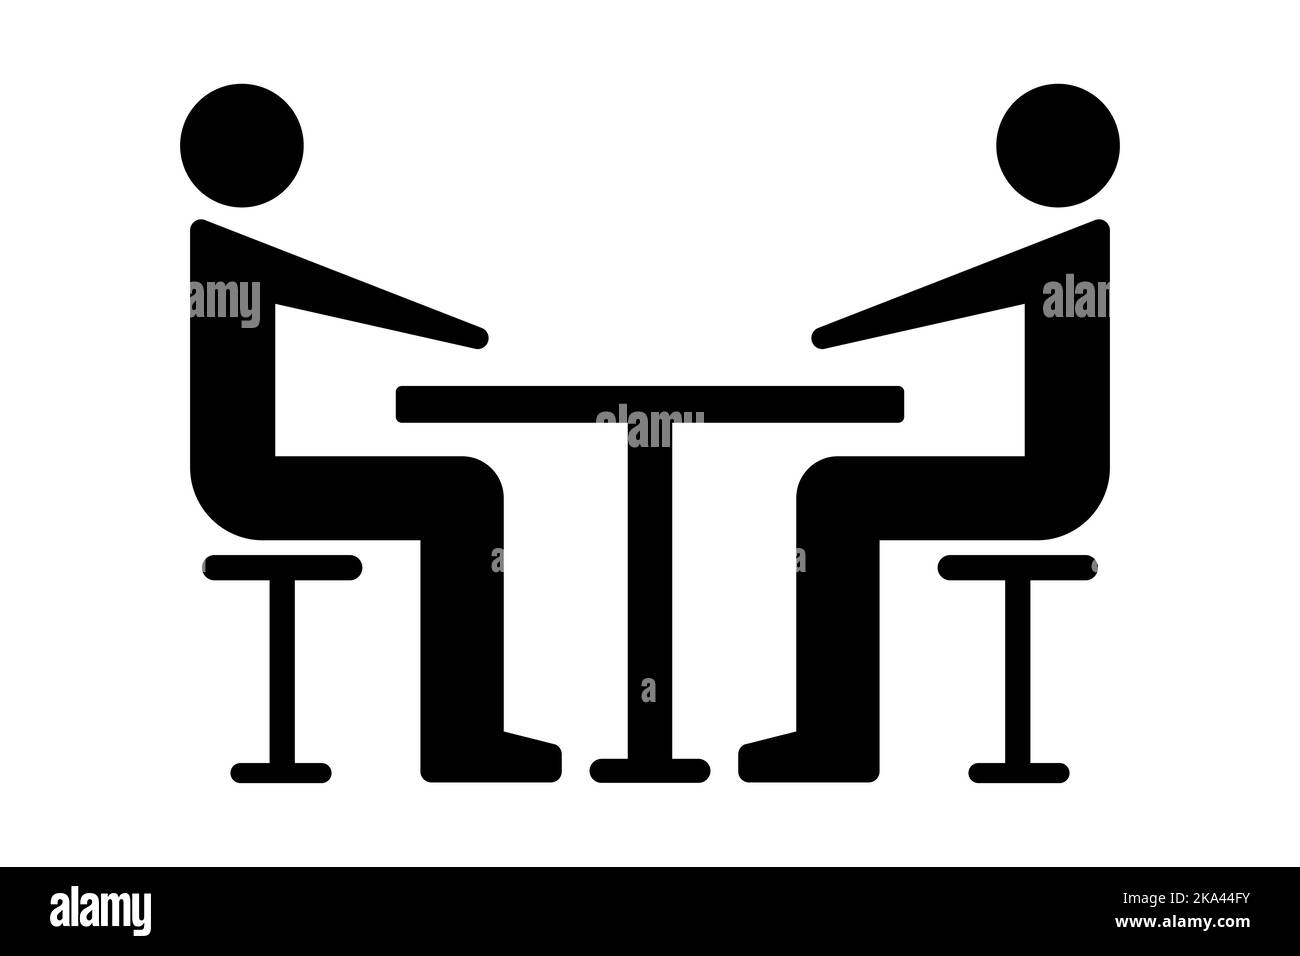 Zwei Personen sitzen an einem Tisch Symbol. Team, Partner, Umgang, Essen. Vektorgrafik Stock Vektor